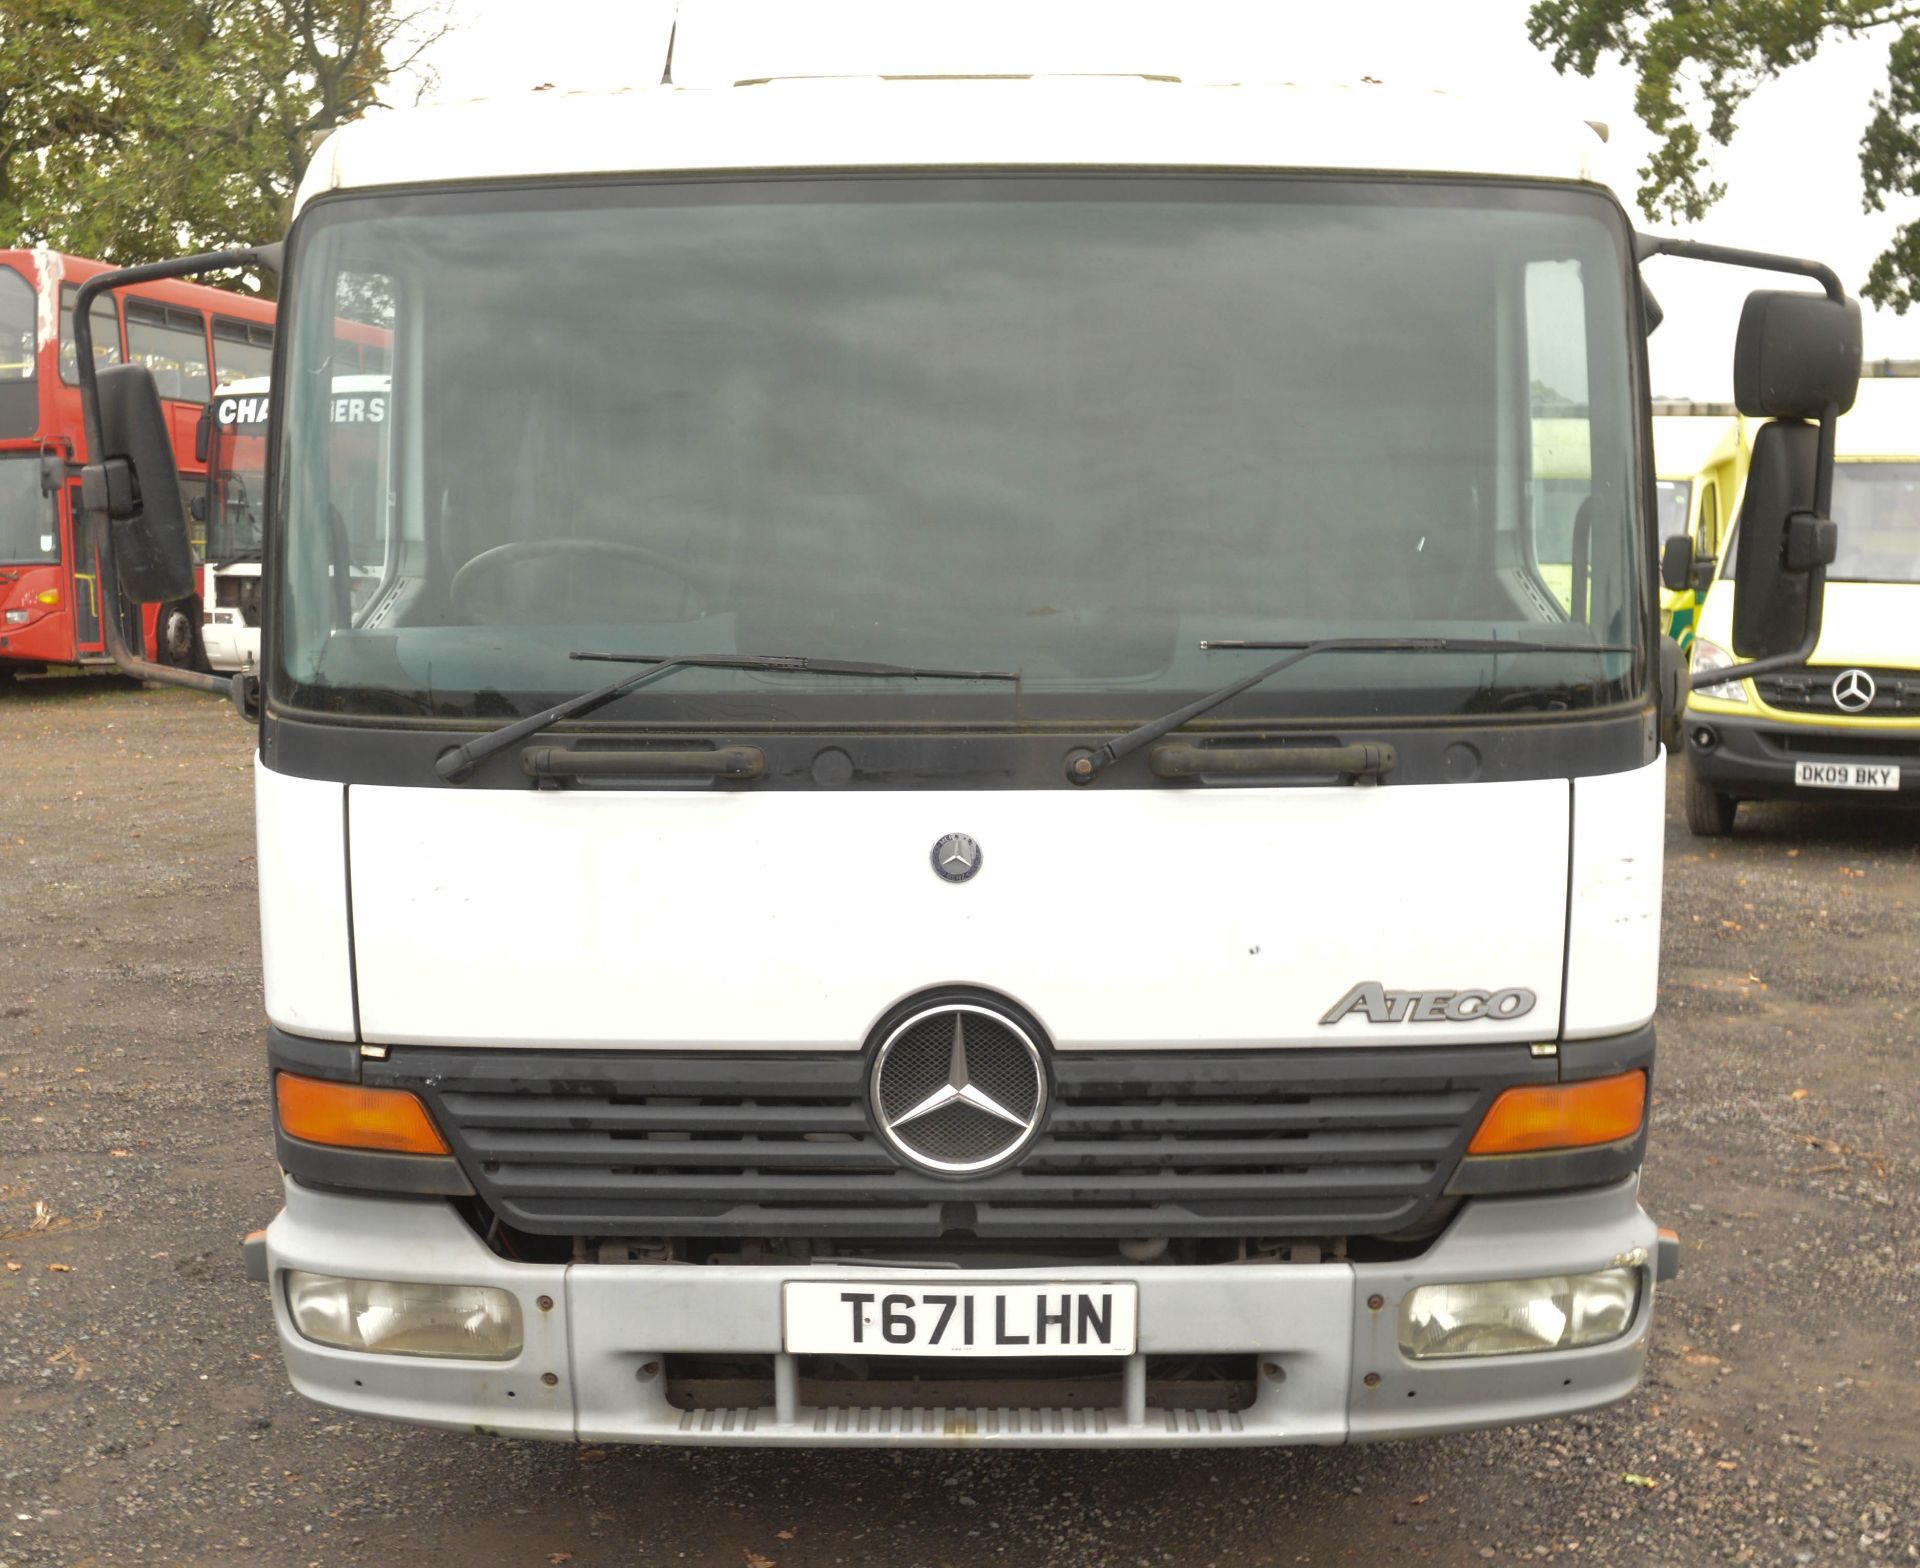 Mercedes-Benz Atego 815 rigid skip loader truck Registration No: T671 LHN Recorded k/m: 227,810 Date - Image 5 of 9